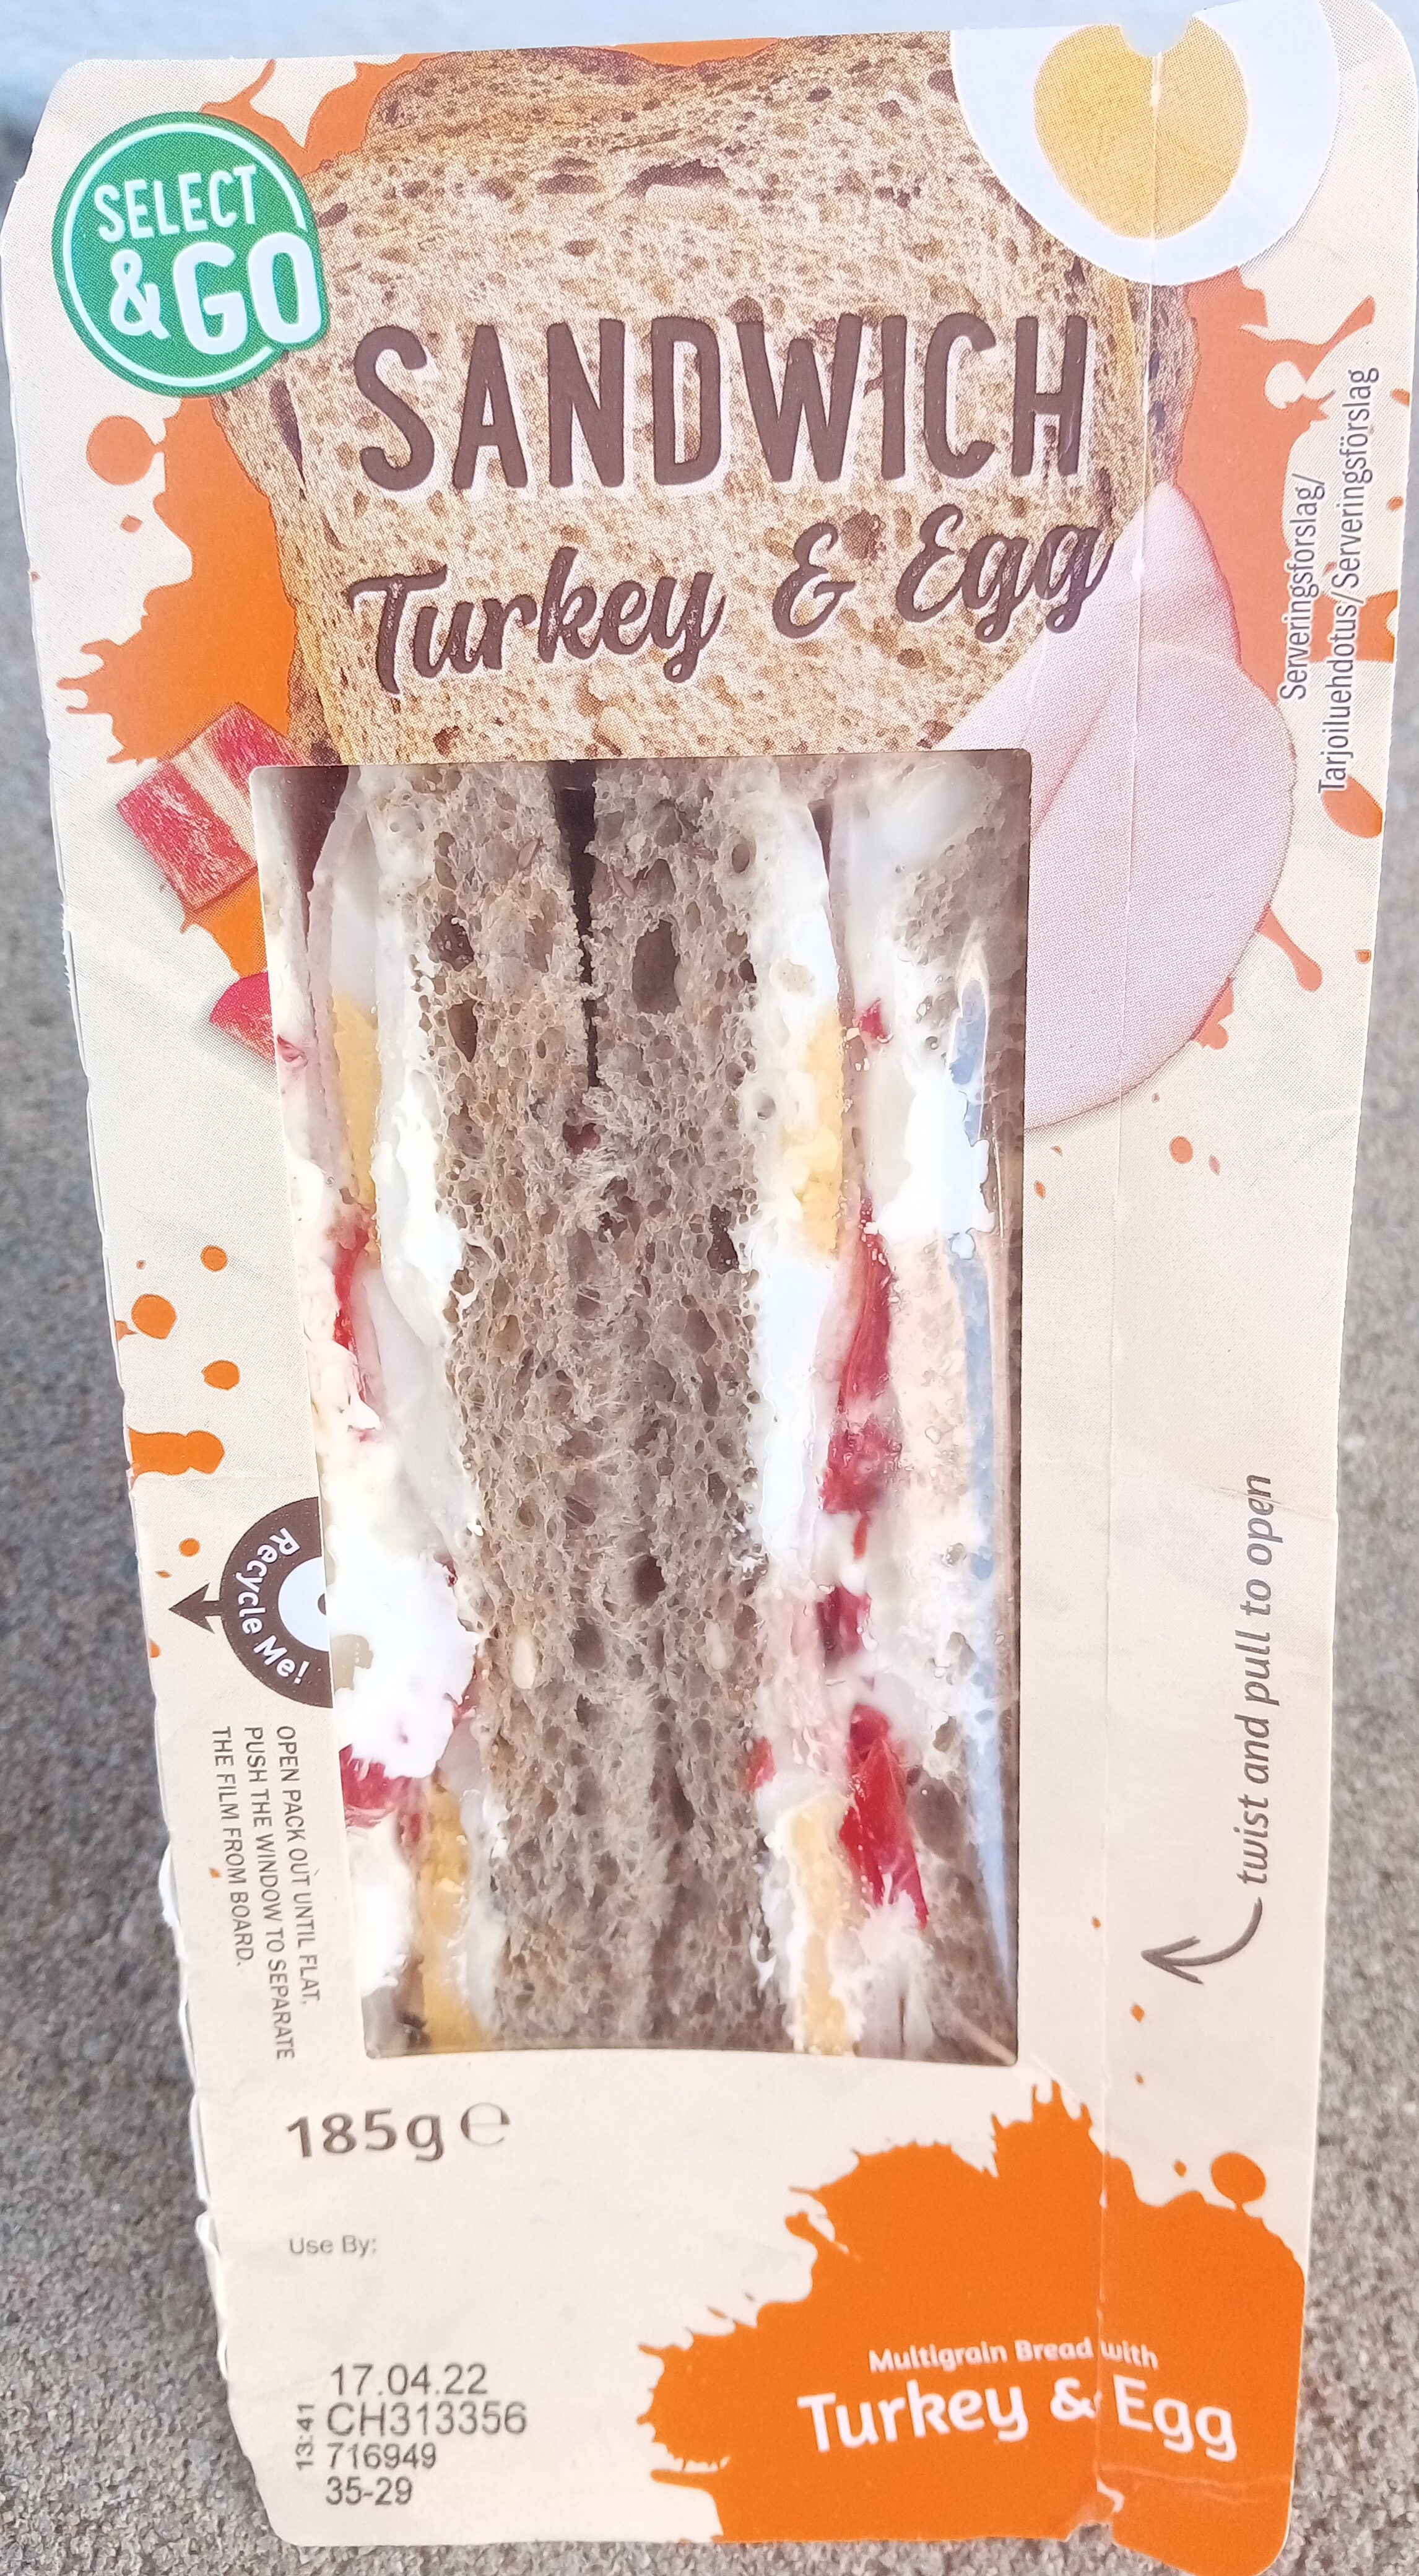 Select & Go Sandwich Turkey & Egg - Tuote - sv